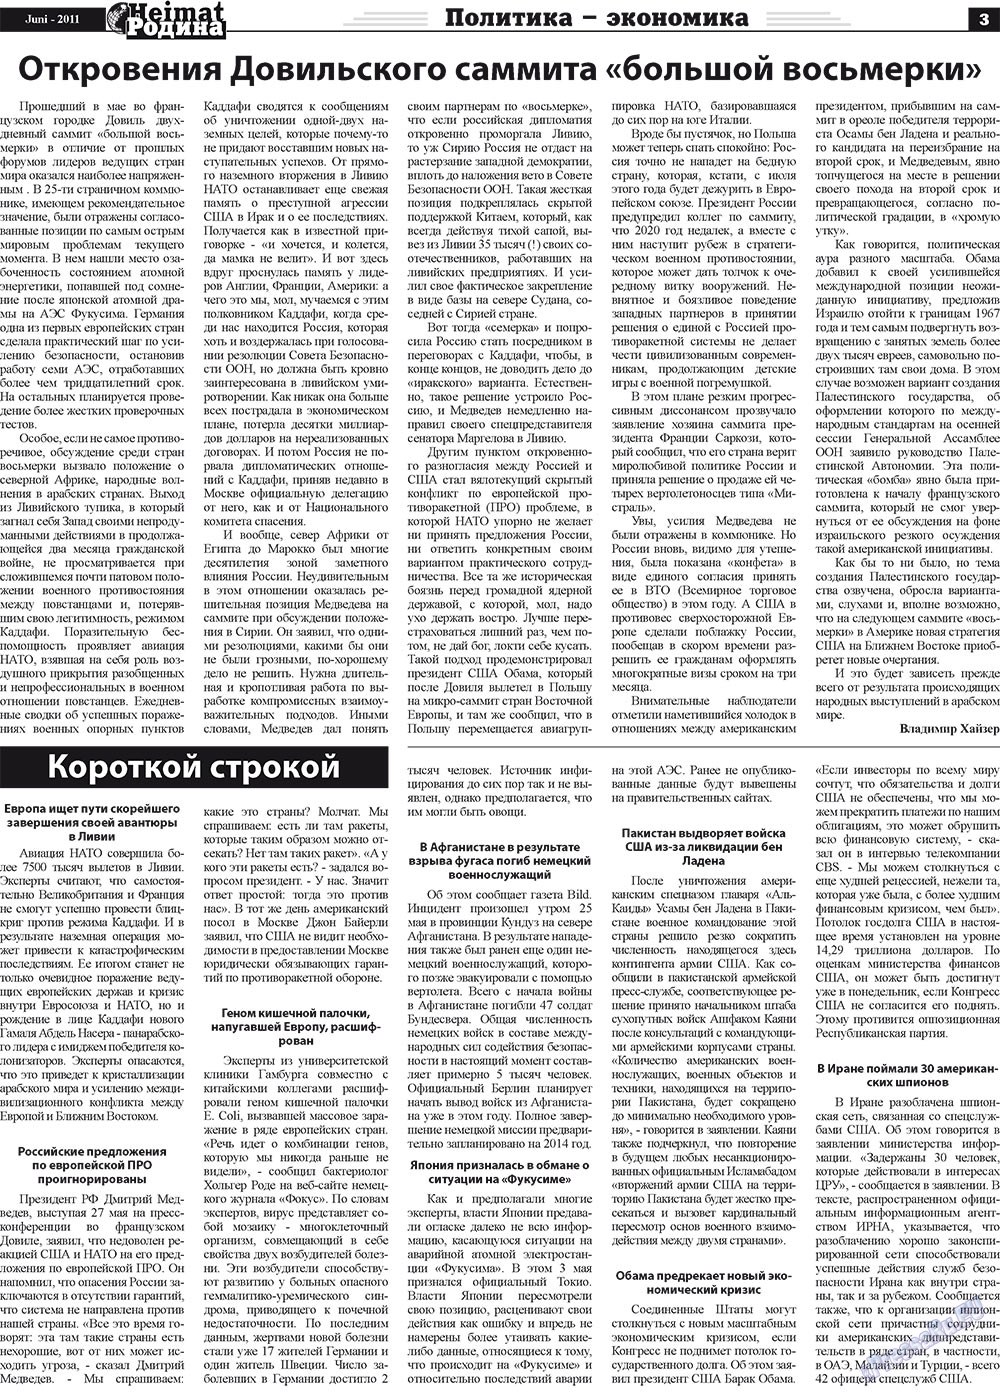 Heimat-Родина (газета). 2011 год, номер 6, стр. 3